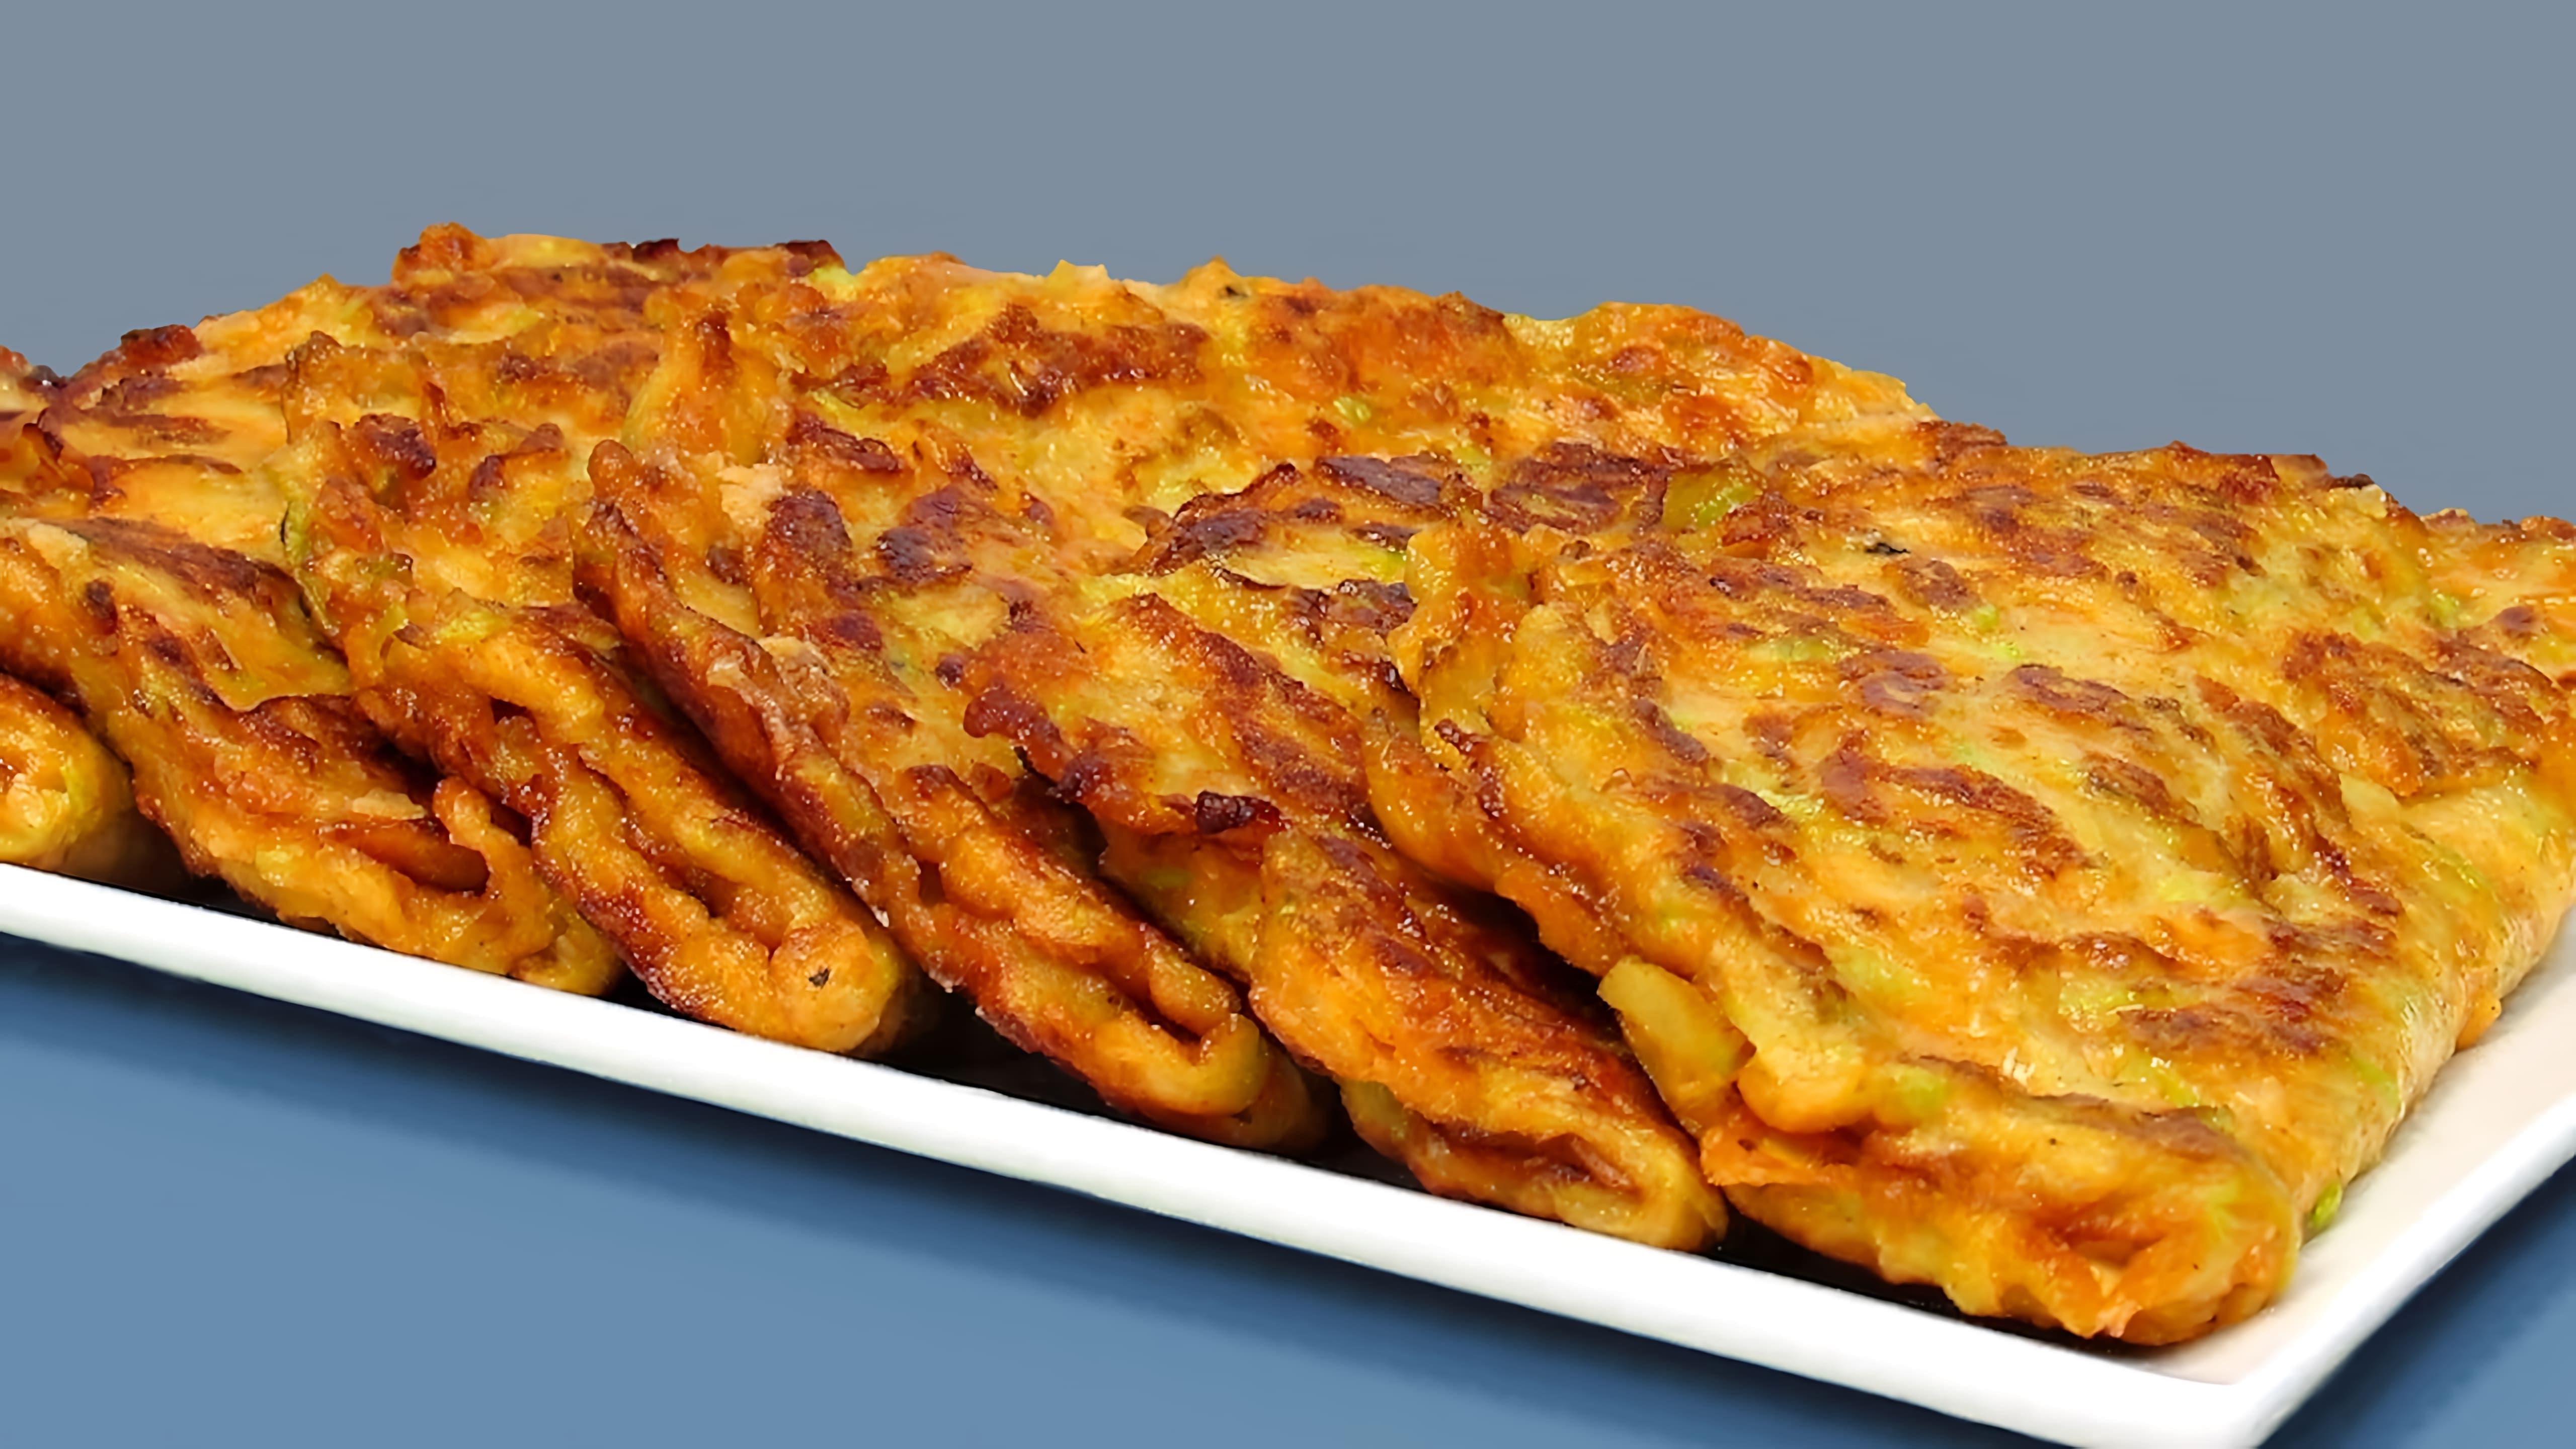 В этом видео демонстрируется рецепт приготовления оладий из кабачков с сыром